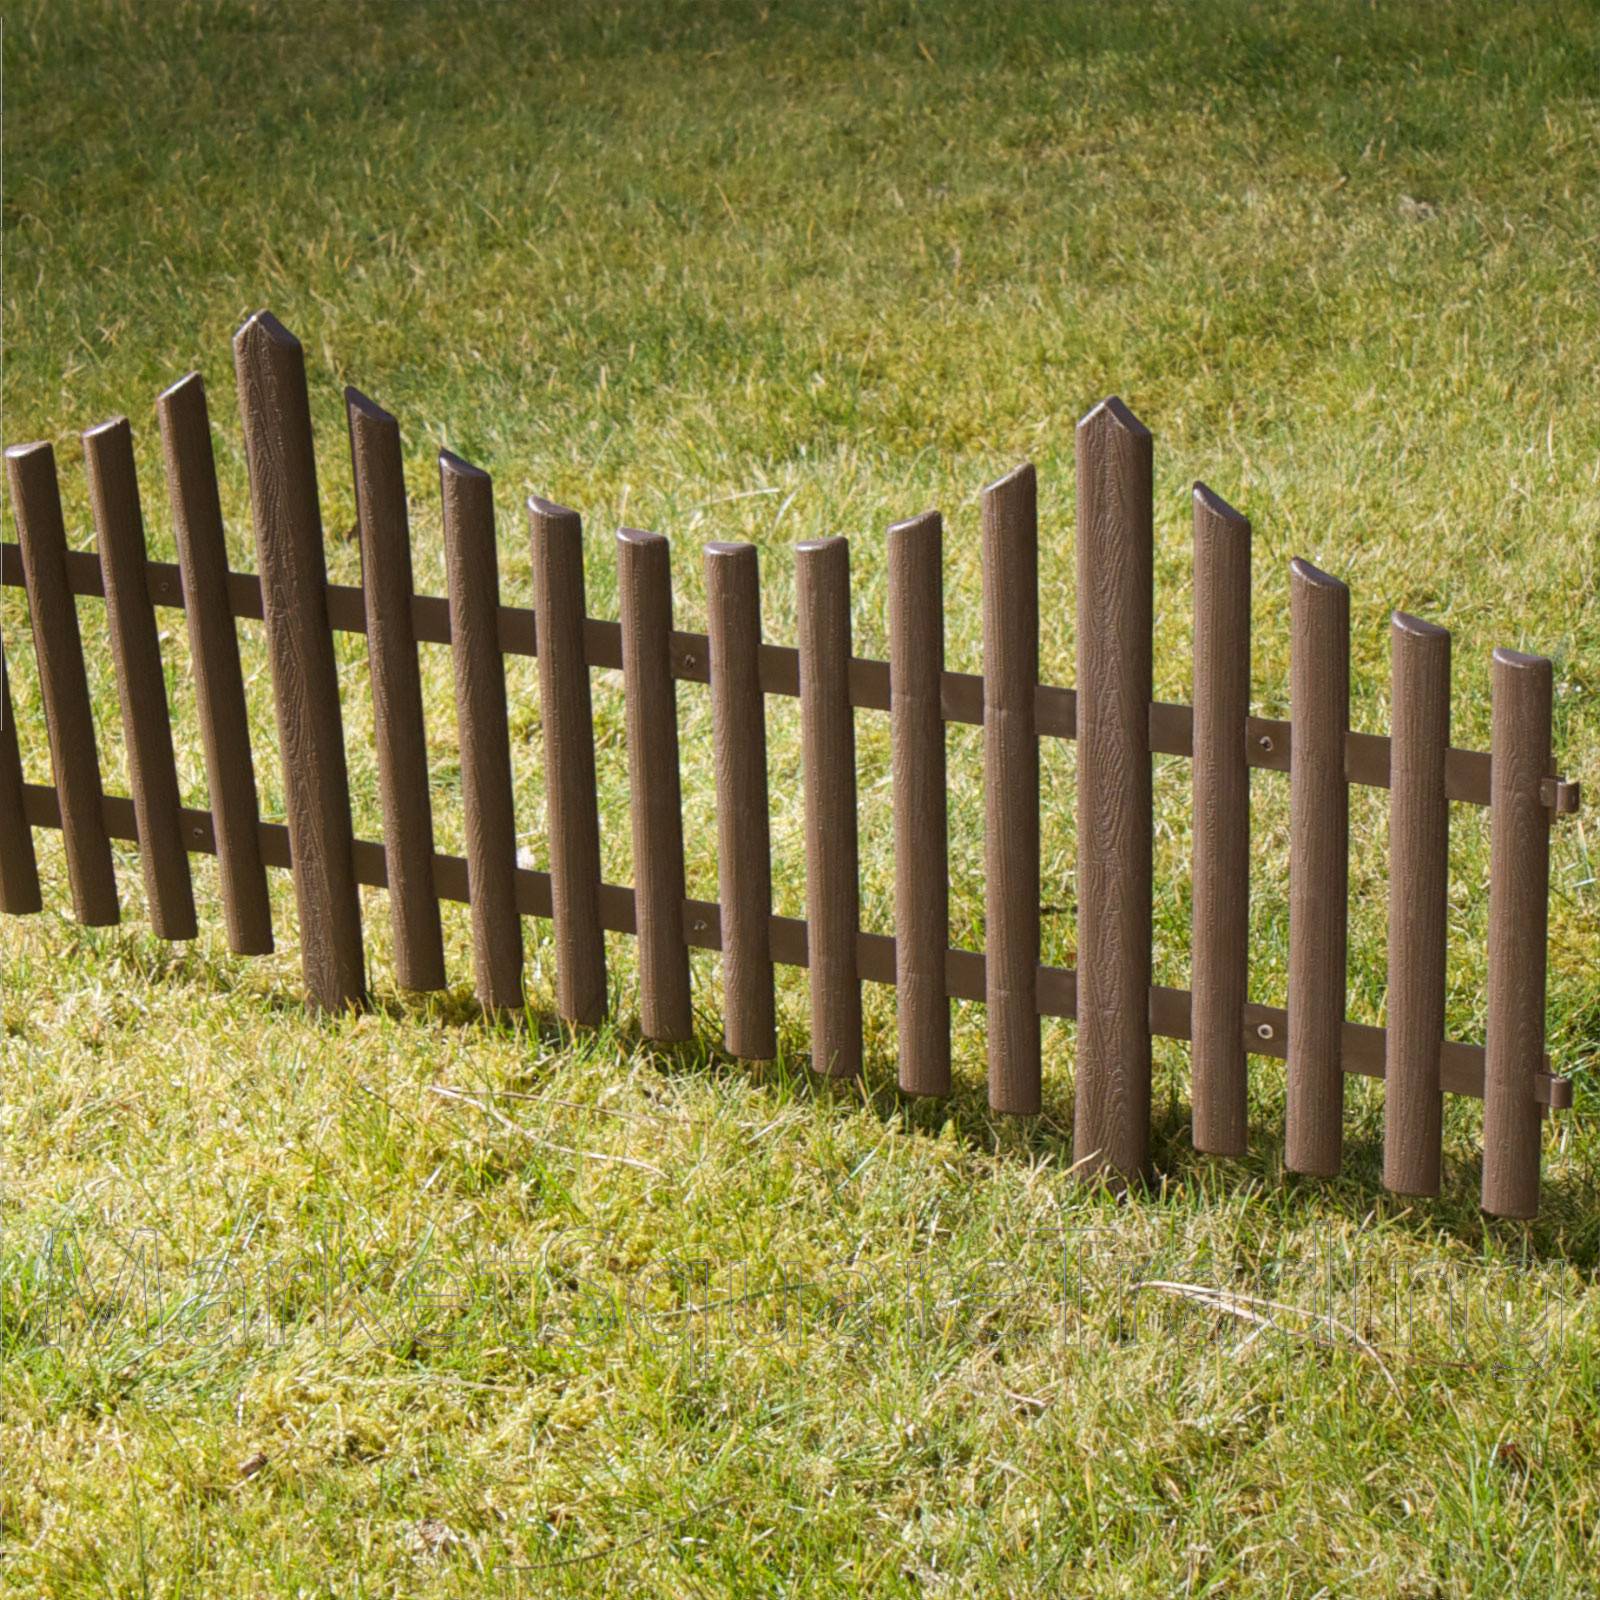 Small Backyard Fence Idea Garden Borders